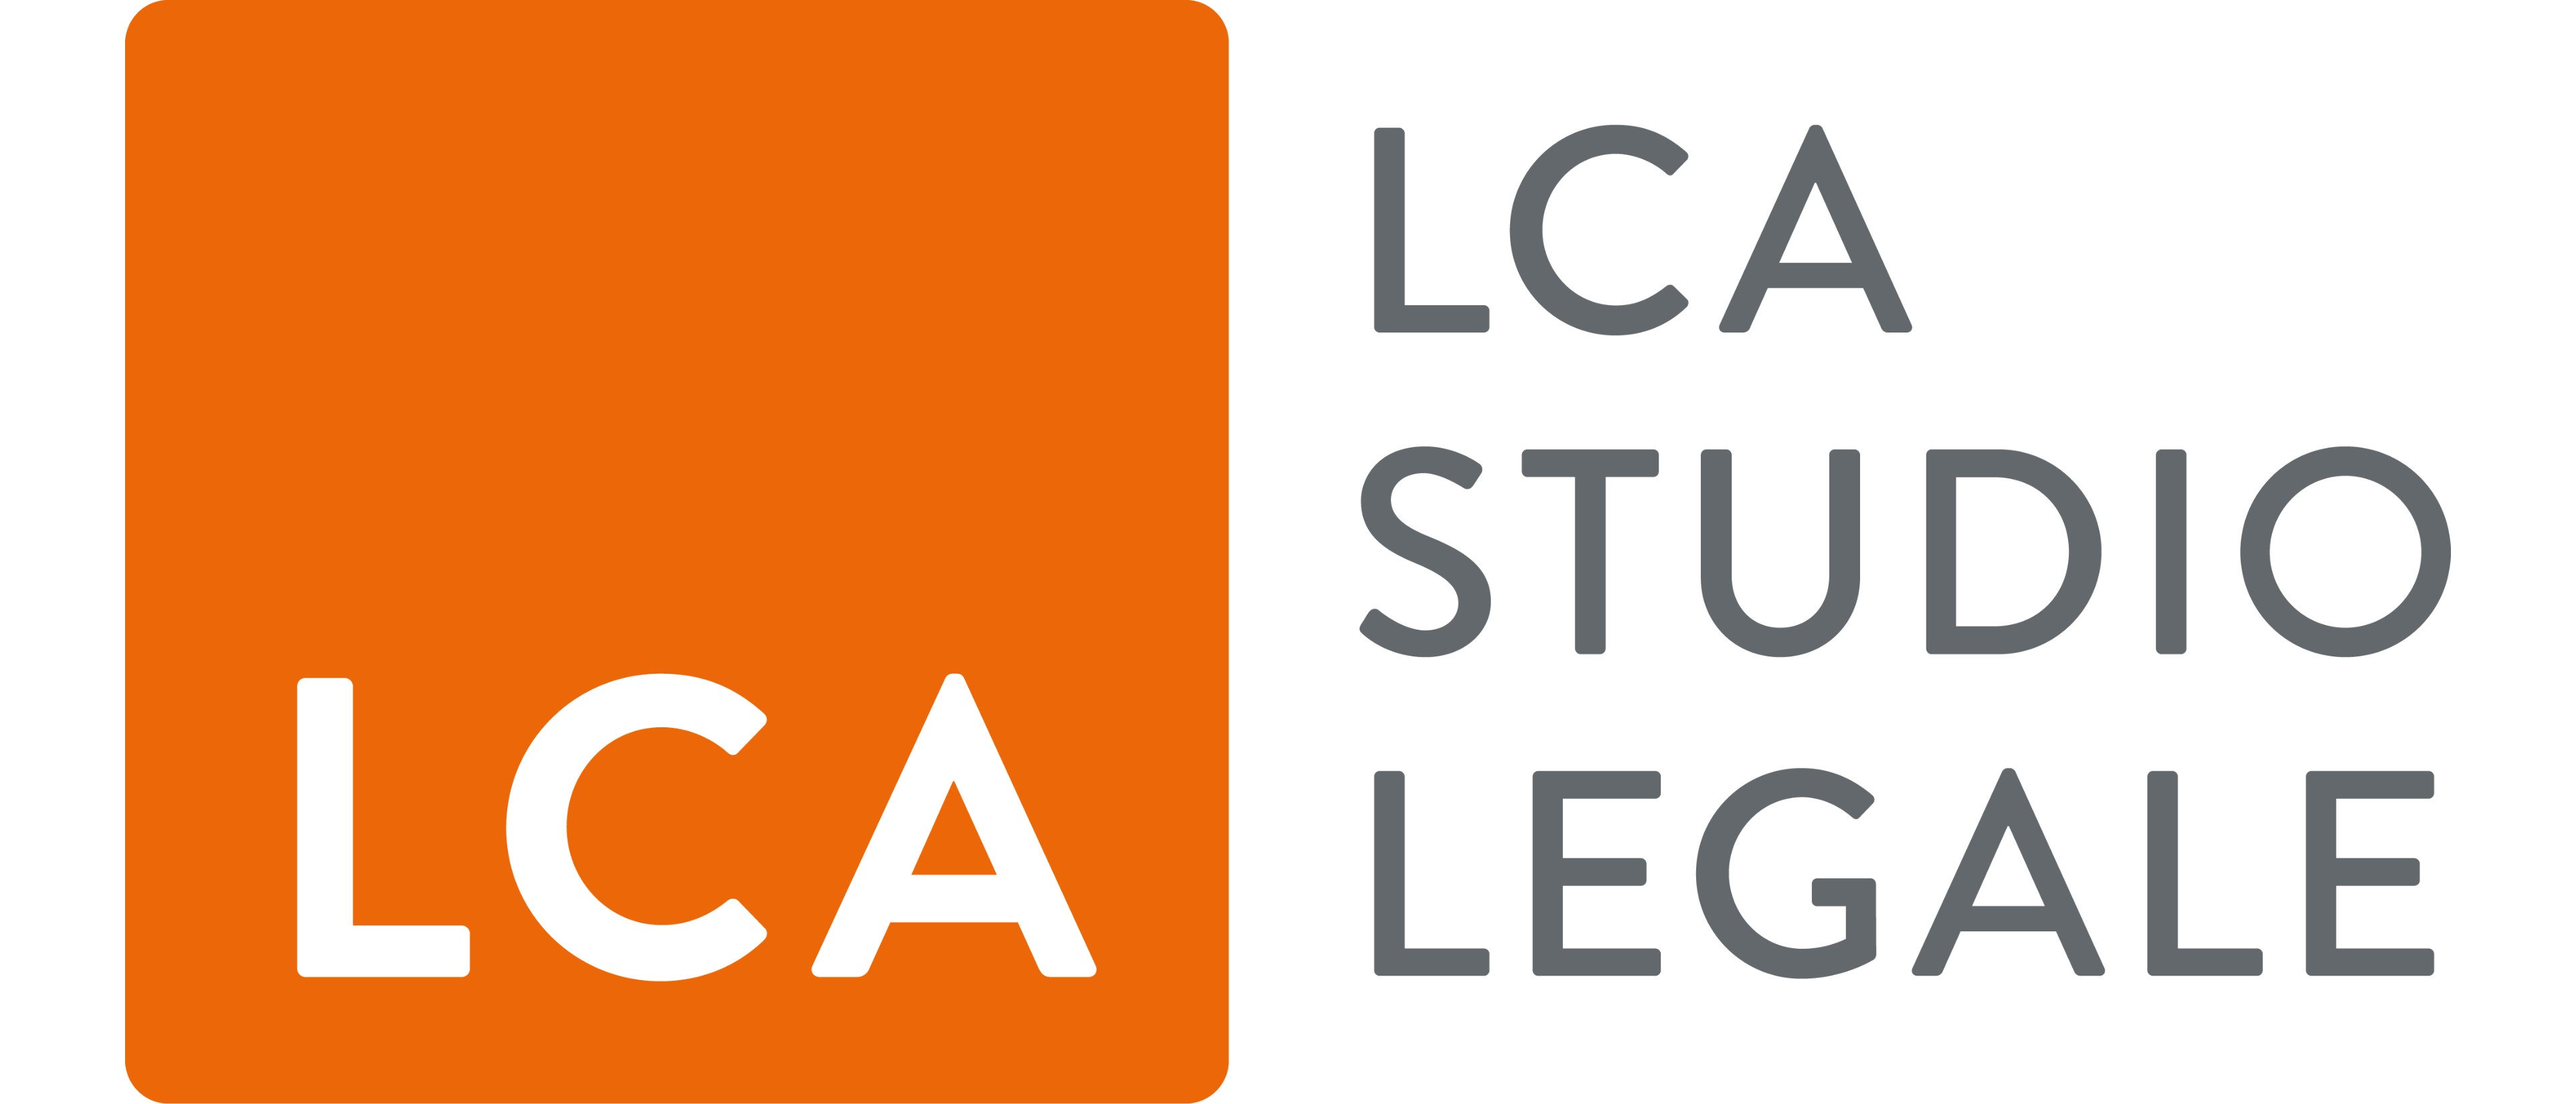 LCA STUDIO LEGALE 